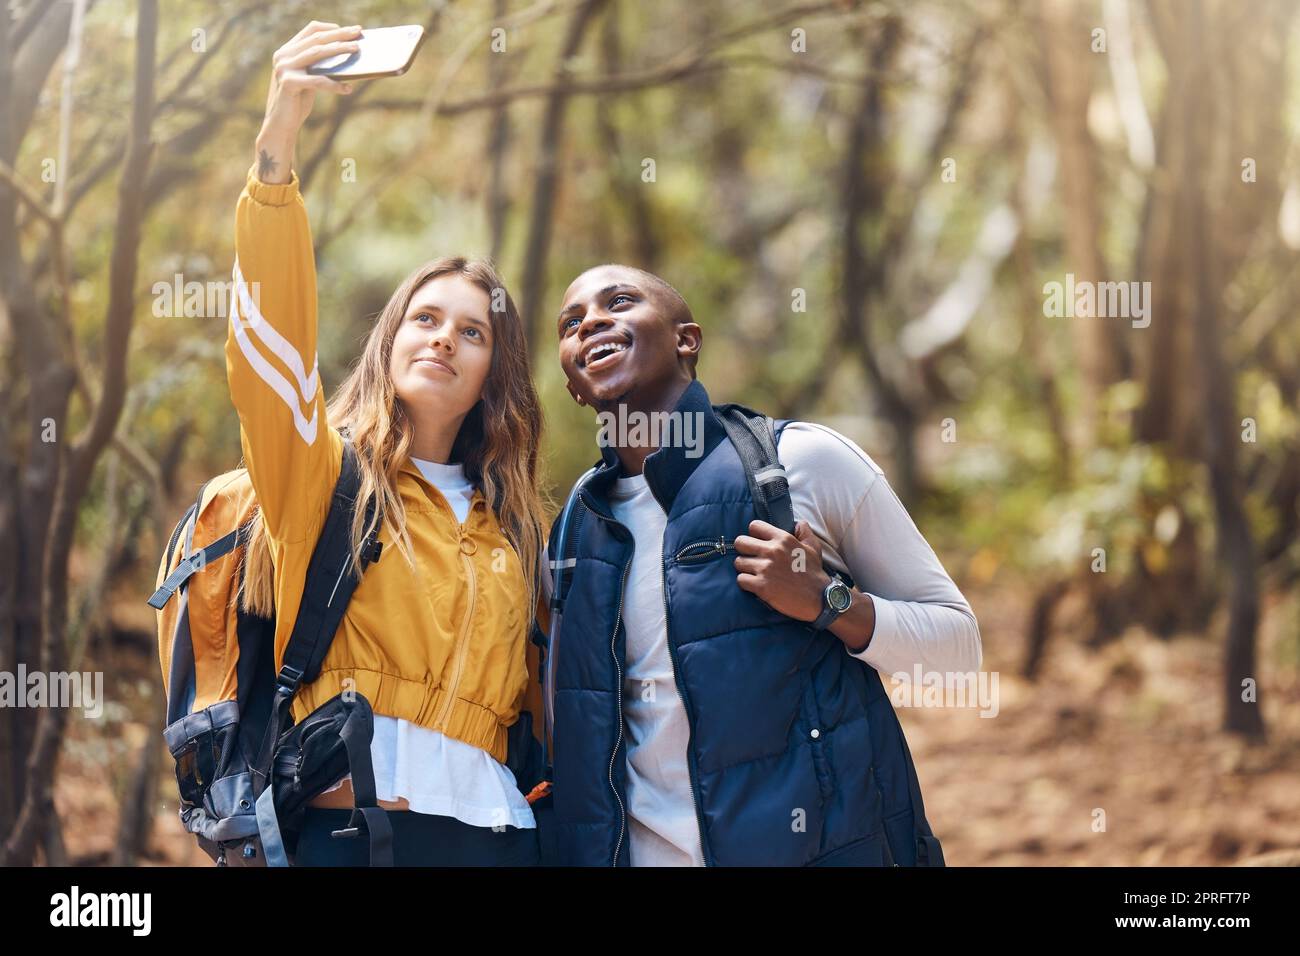 Selfie, glückliches Paar und Wanderabenteuer, während Sie Ihr Telefon für Urlaubsreisen in einem Wald oder Wald halten. Glücklich, Liebe und Bewegung in einer gesunden Beziehung zu schwarzem Mann und weißer Frau Stockfoto